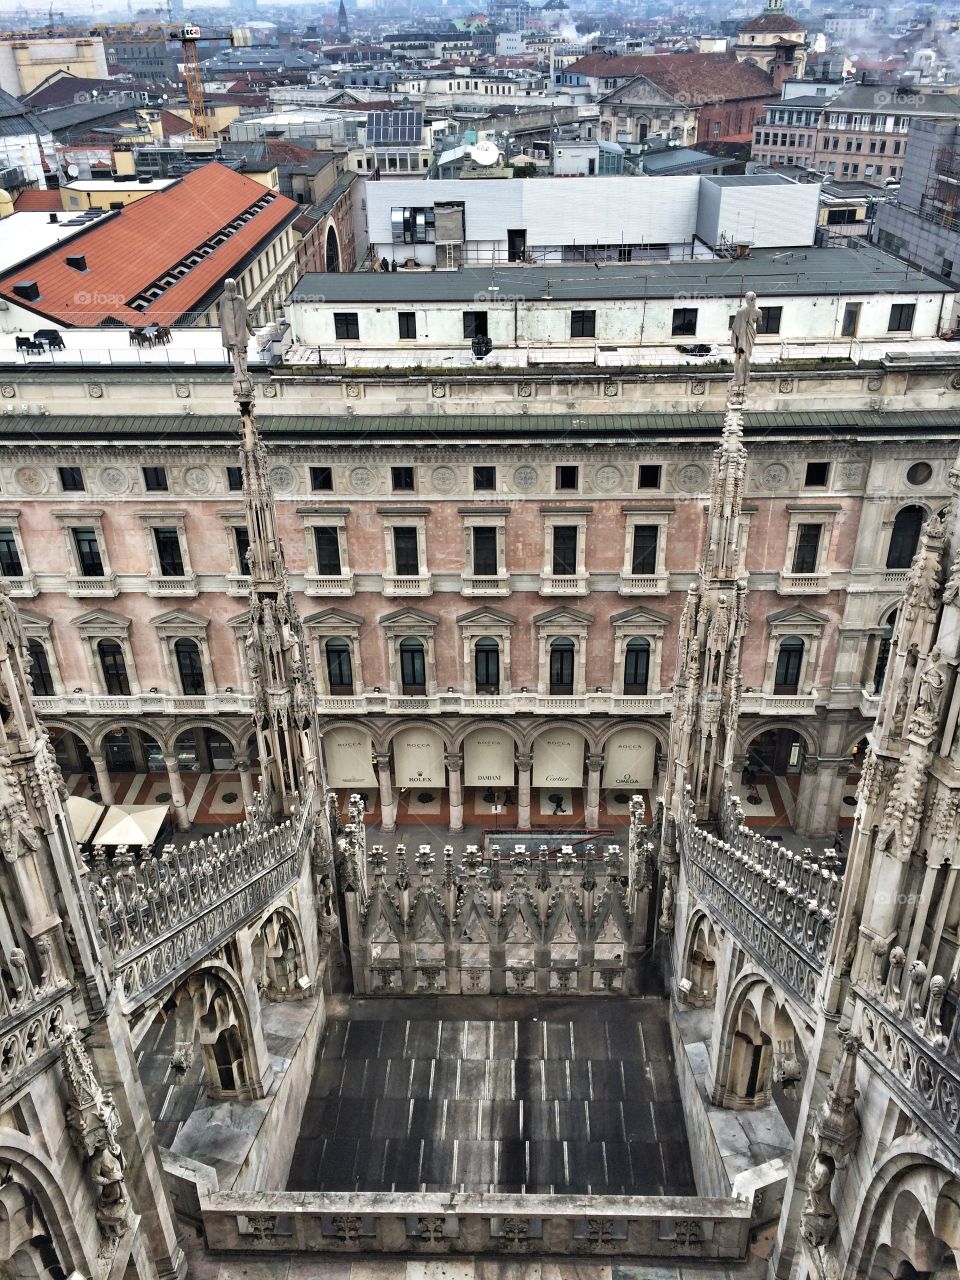 Milano, Italy from Duomo